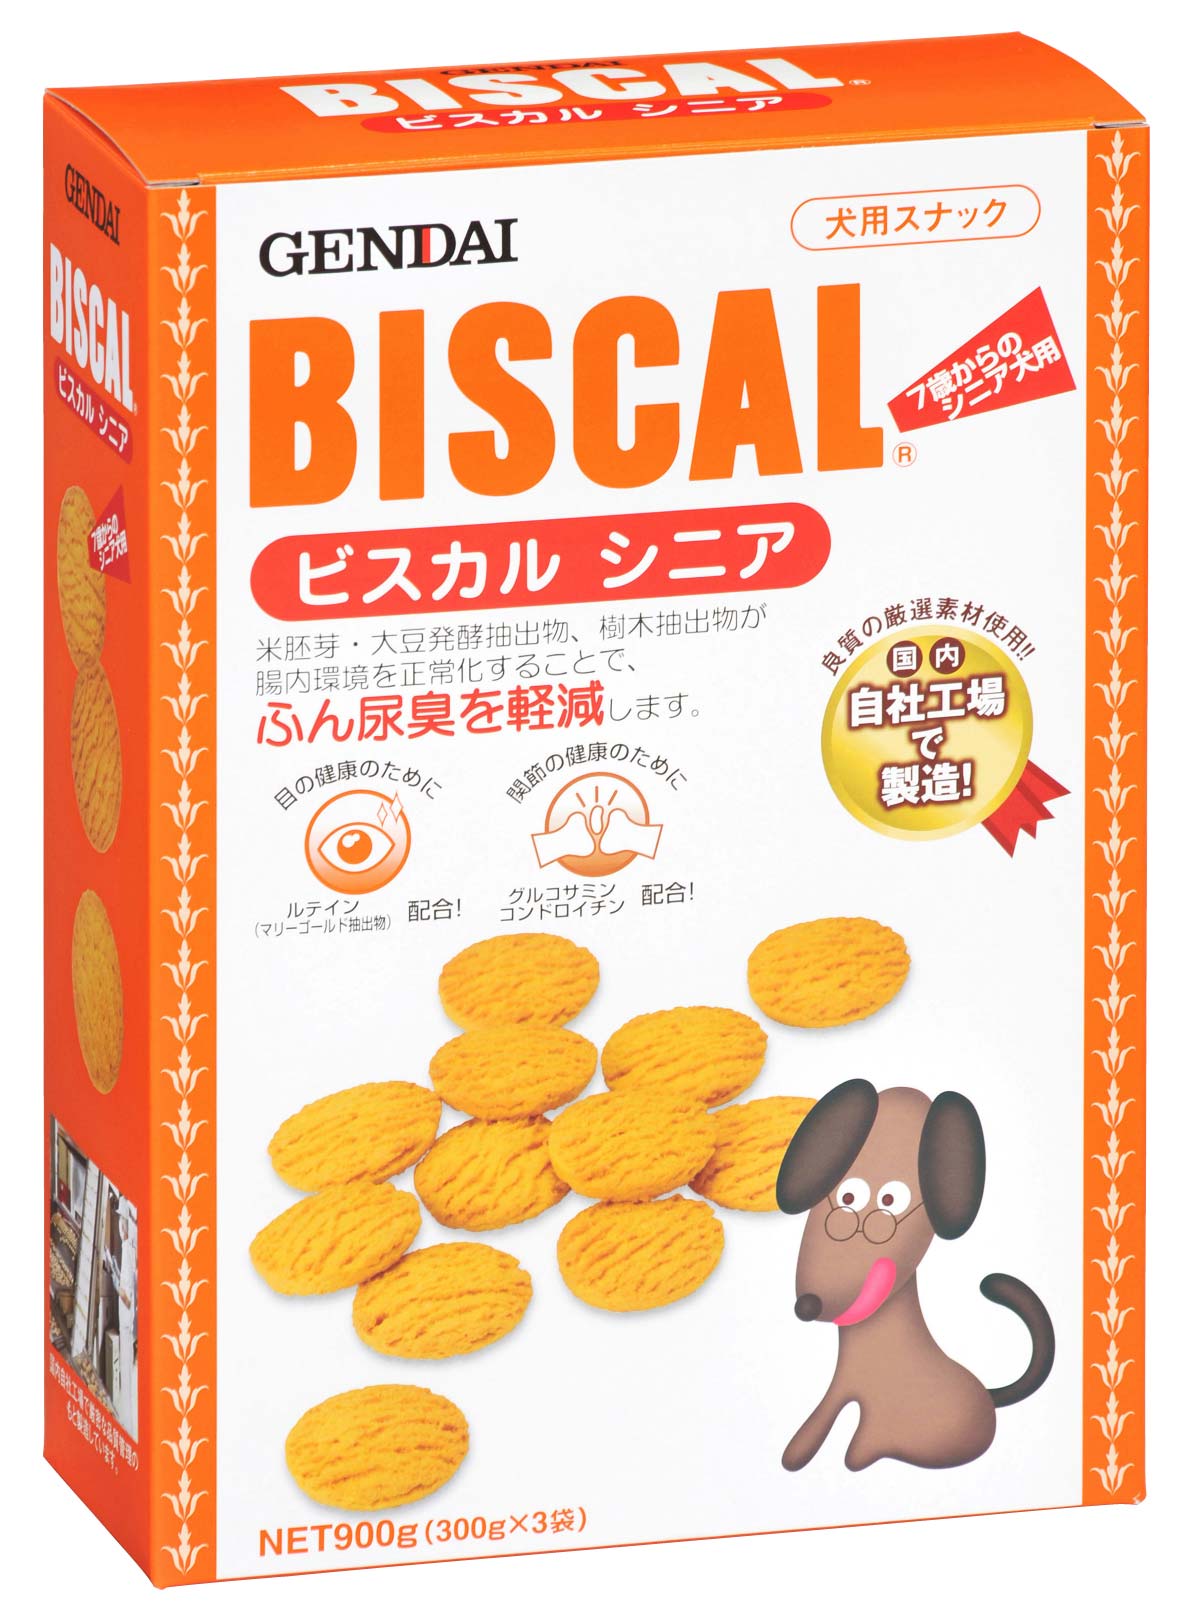 消臭餅乾(熟齡犬用)-900g
BISCAL Mature adult dog cookie-900g